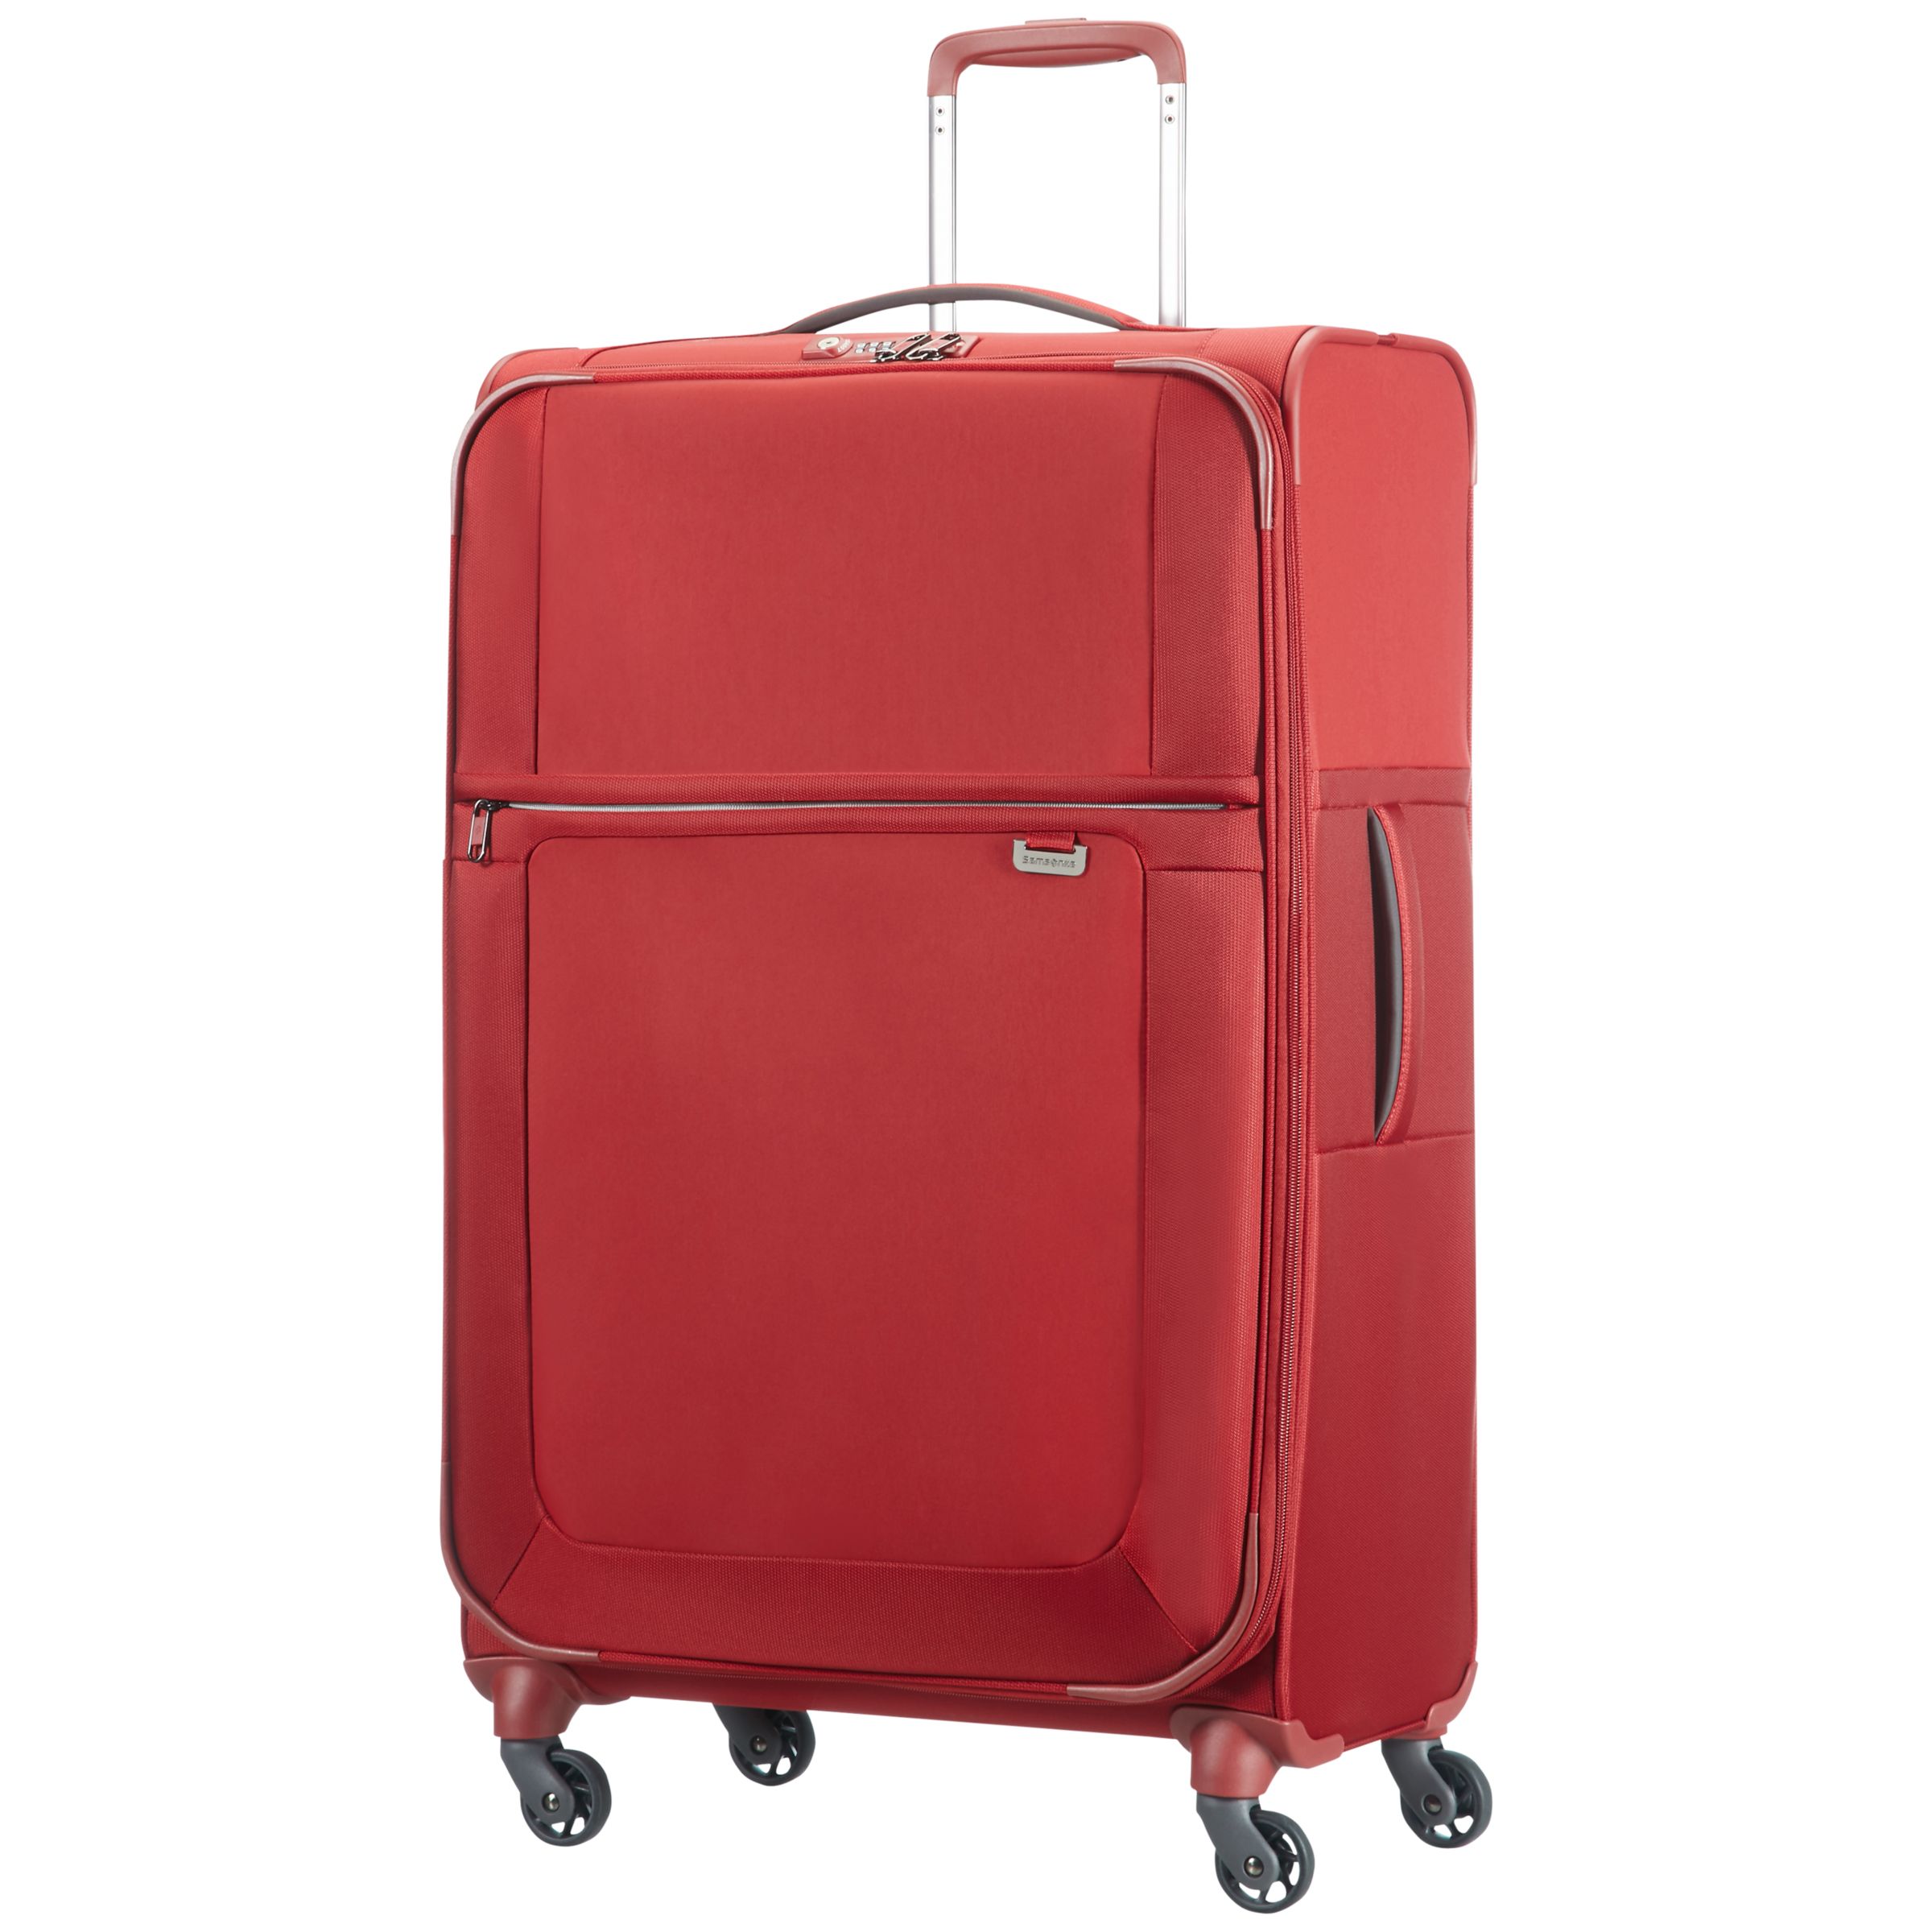 Samsonite Uplite 4-Wheel 78cm Spinner Suitcase, Red at John Lewis ...